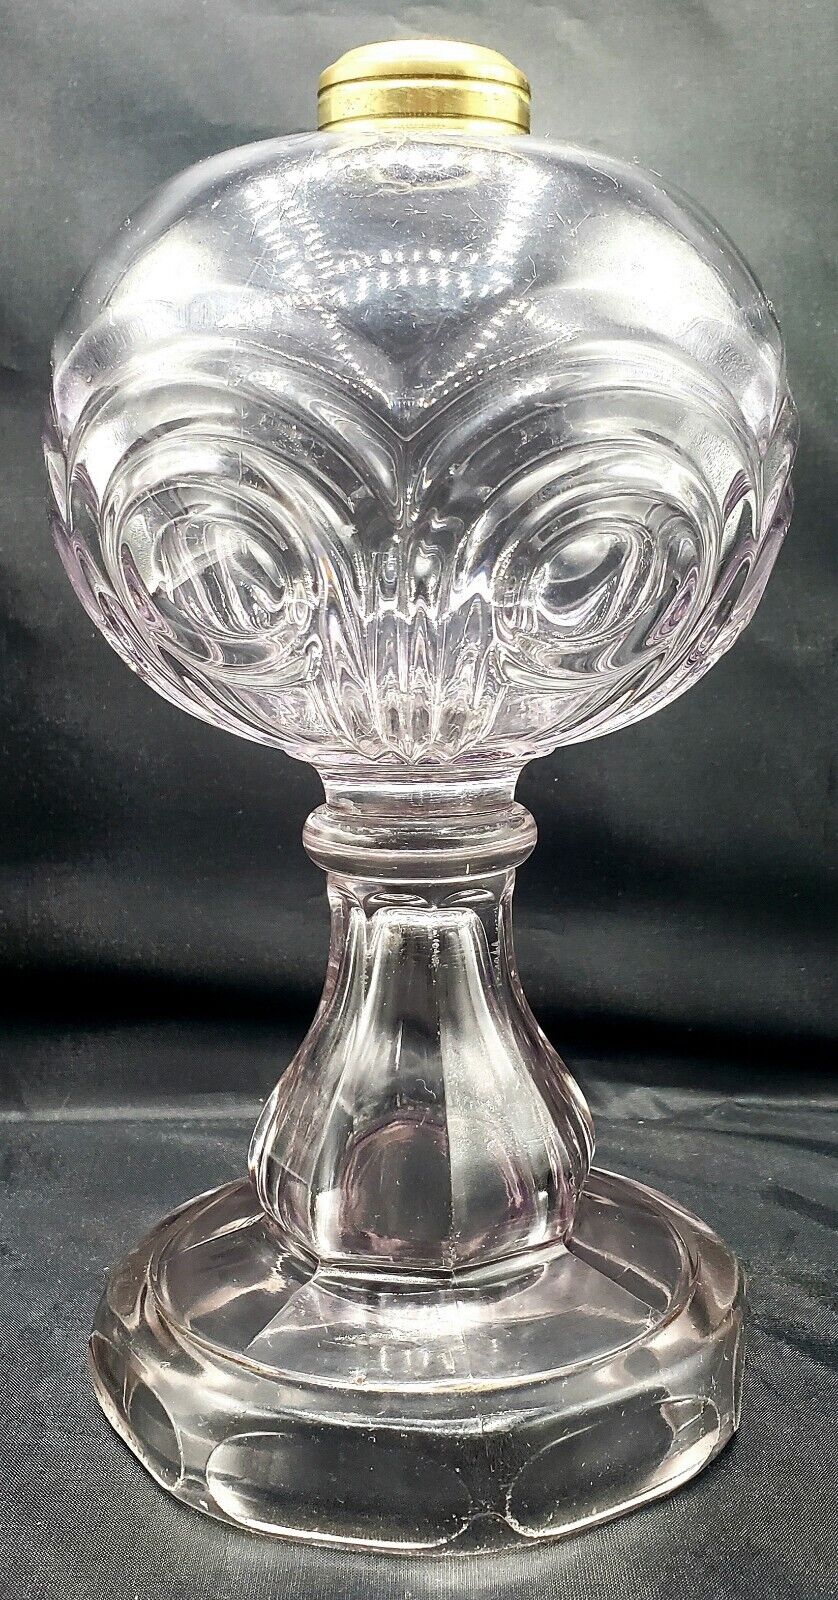 Antique PANELLED BULLSEYE All Glass Oil Kerosene Stand Lamp Thuro Ref. c.1860s